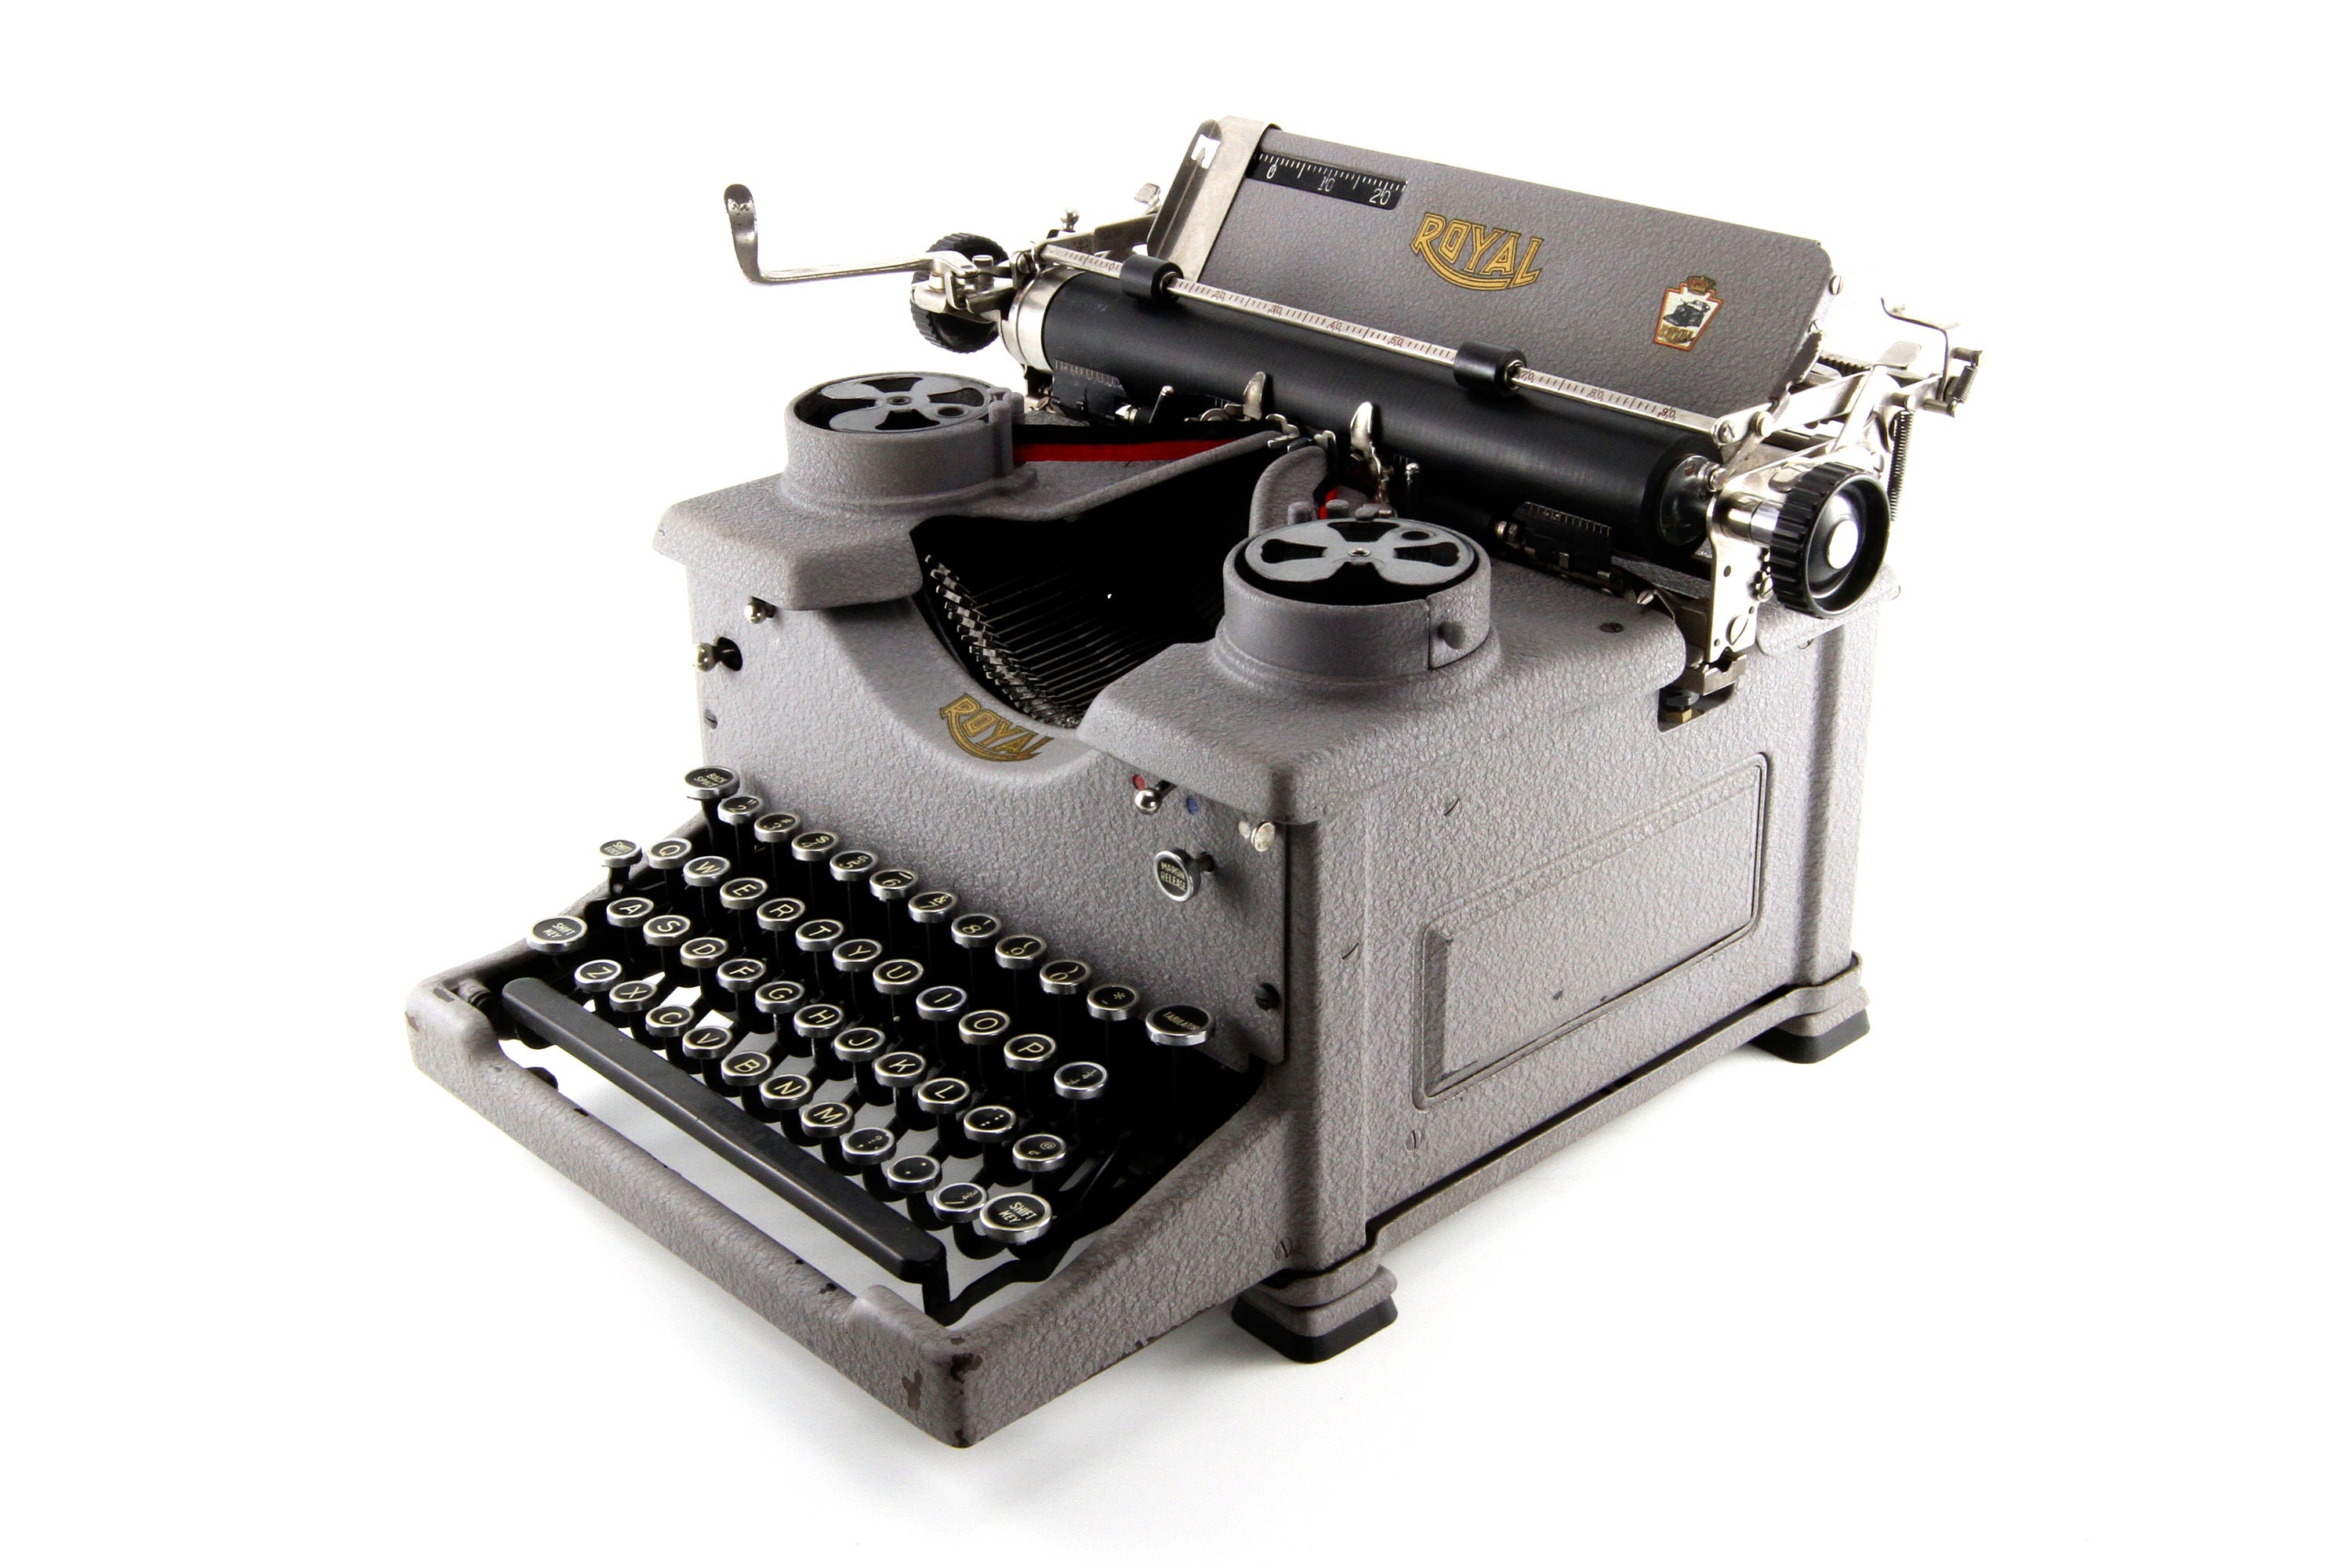 Machine à écrire Royal ancienne